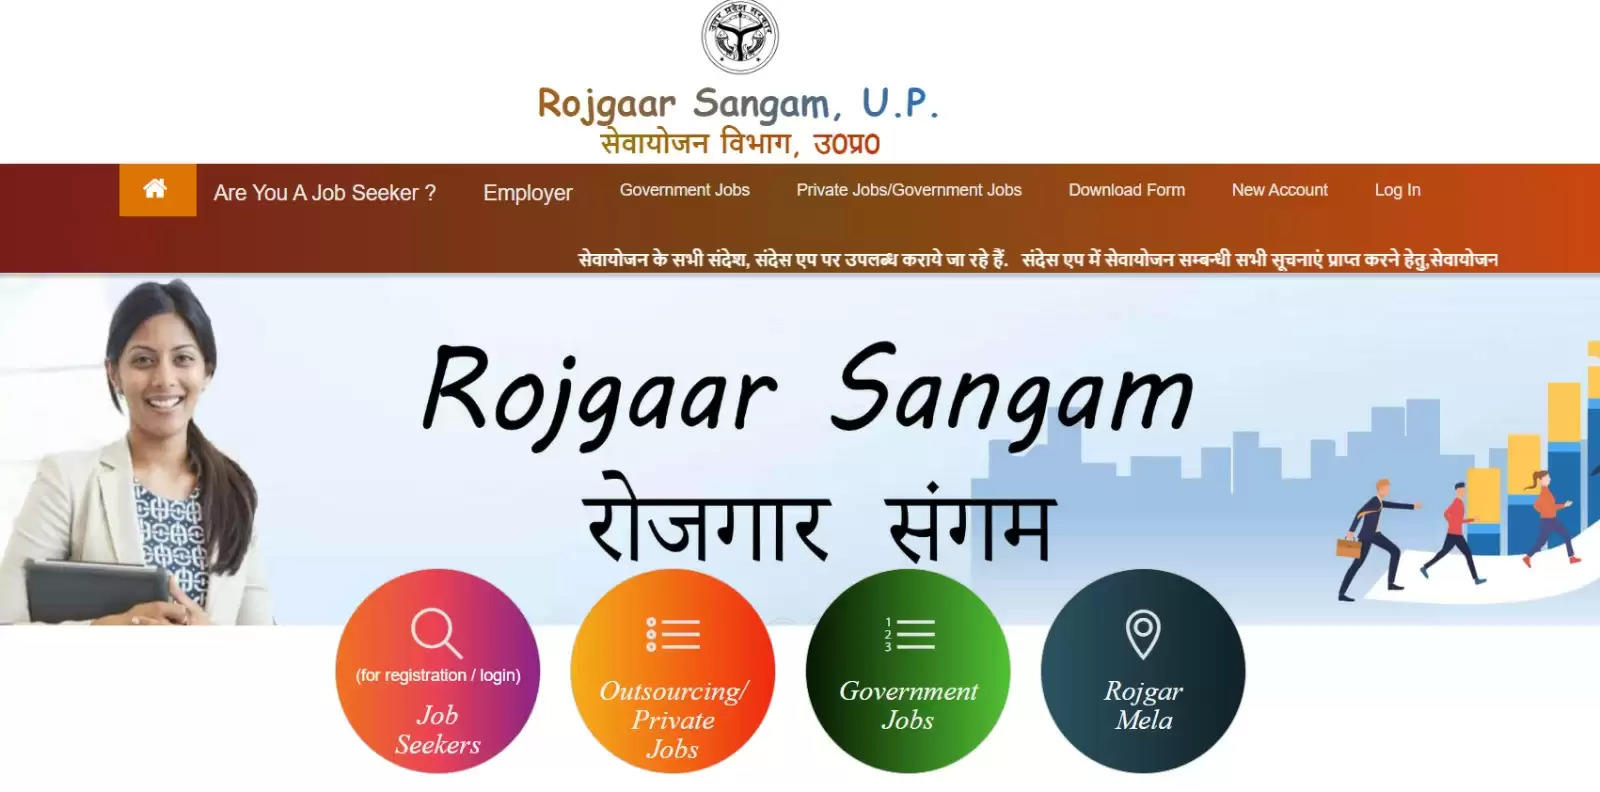 Rojgaar Sangam portal